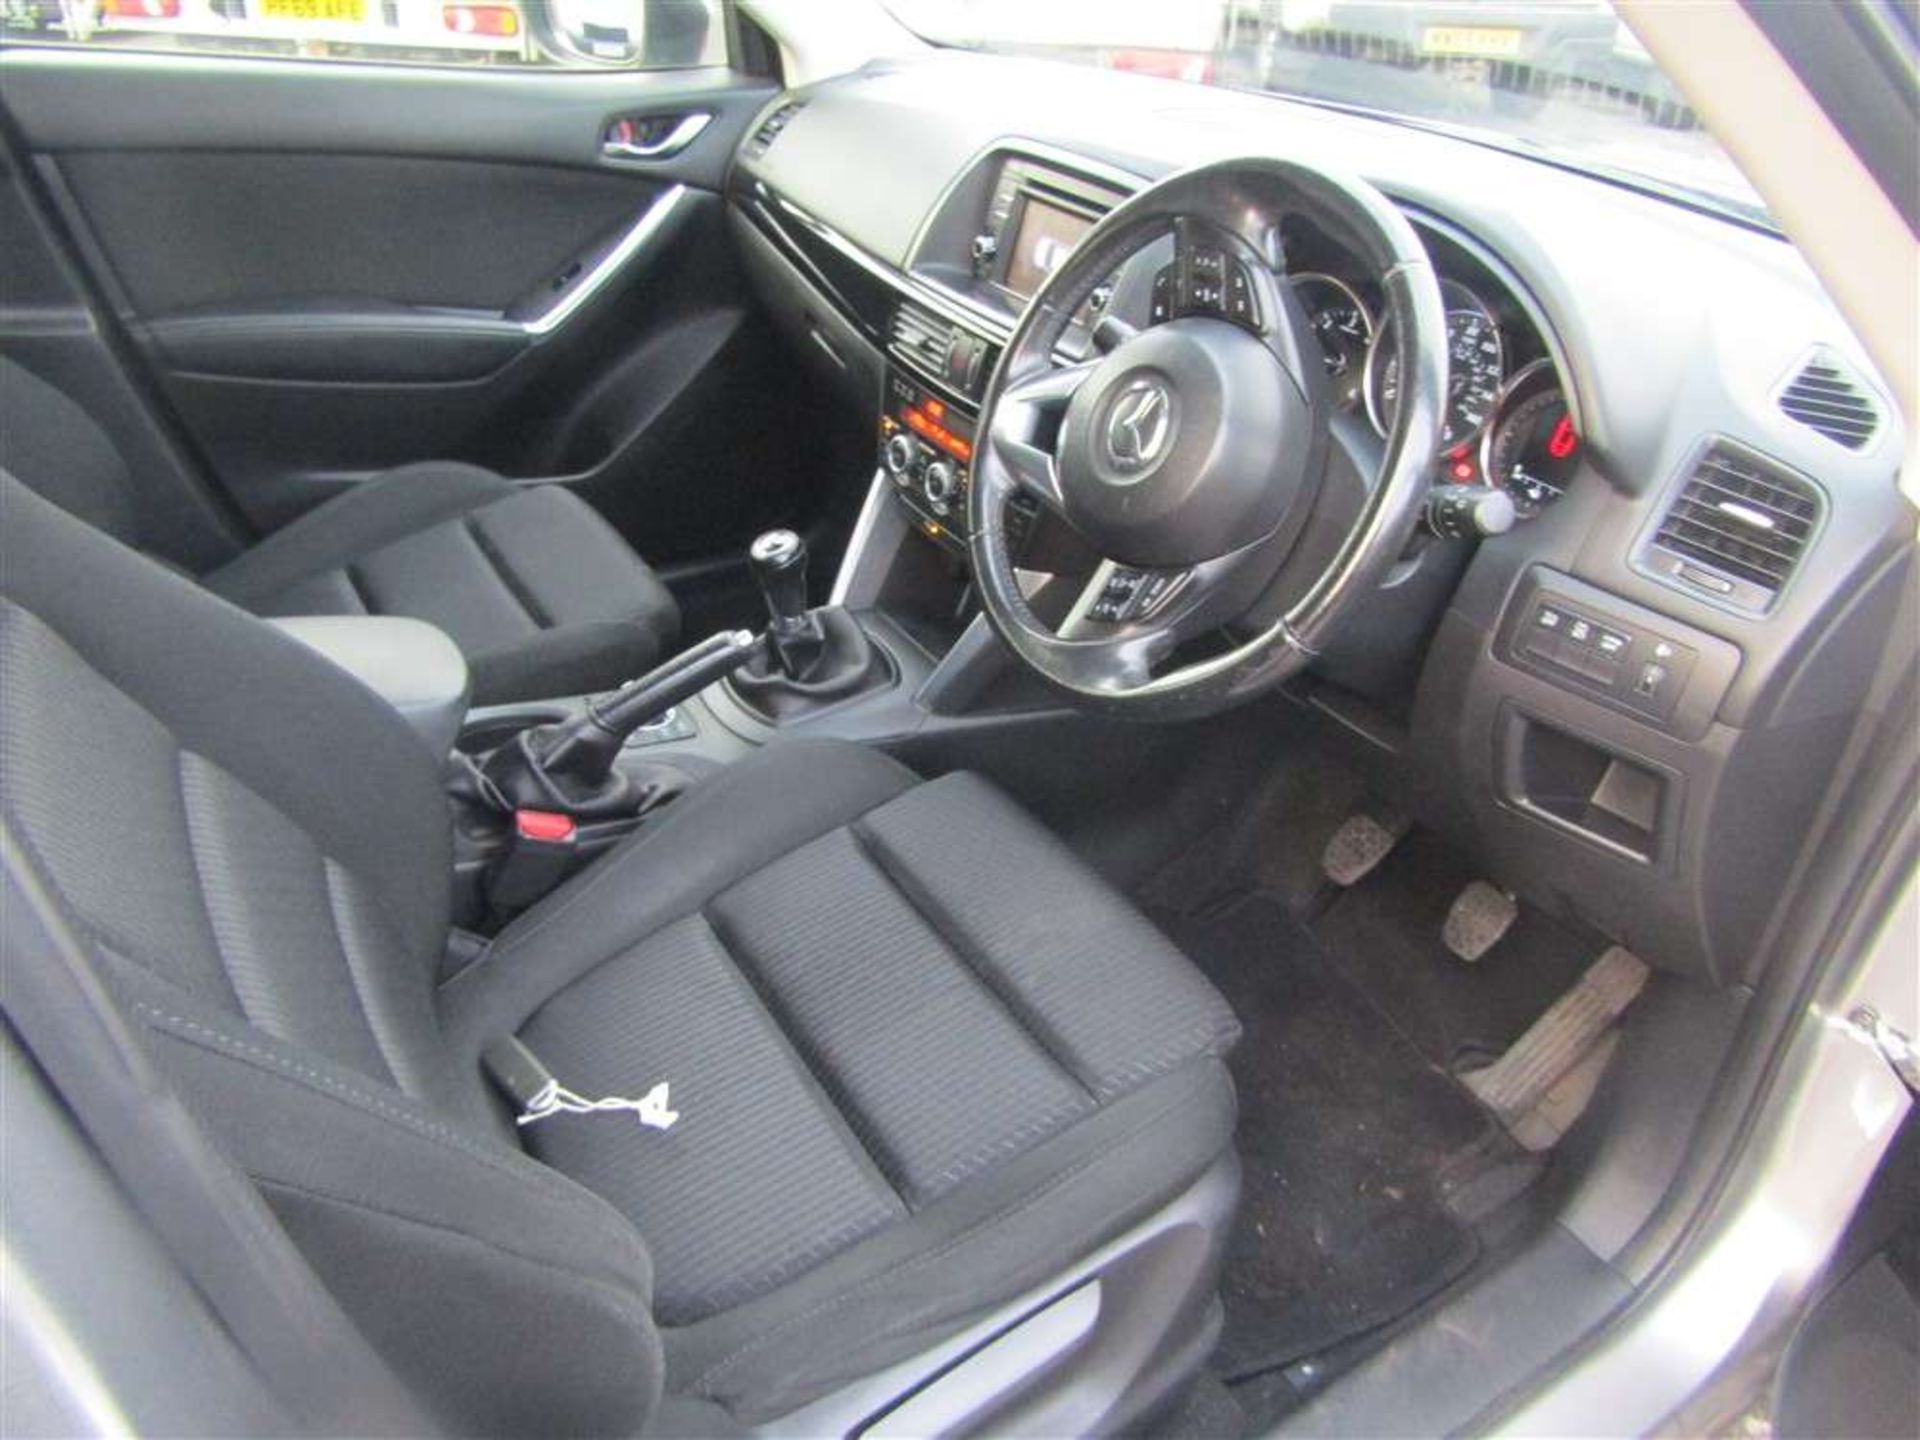 2014 64 reg Mazda CX-5 SE-L D - Bild 5 aus 6